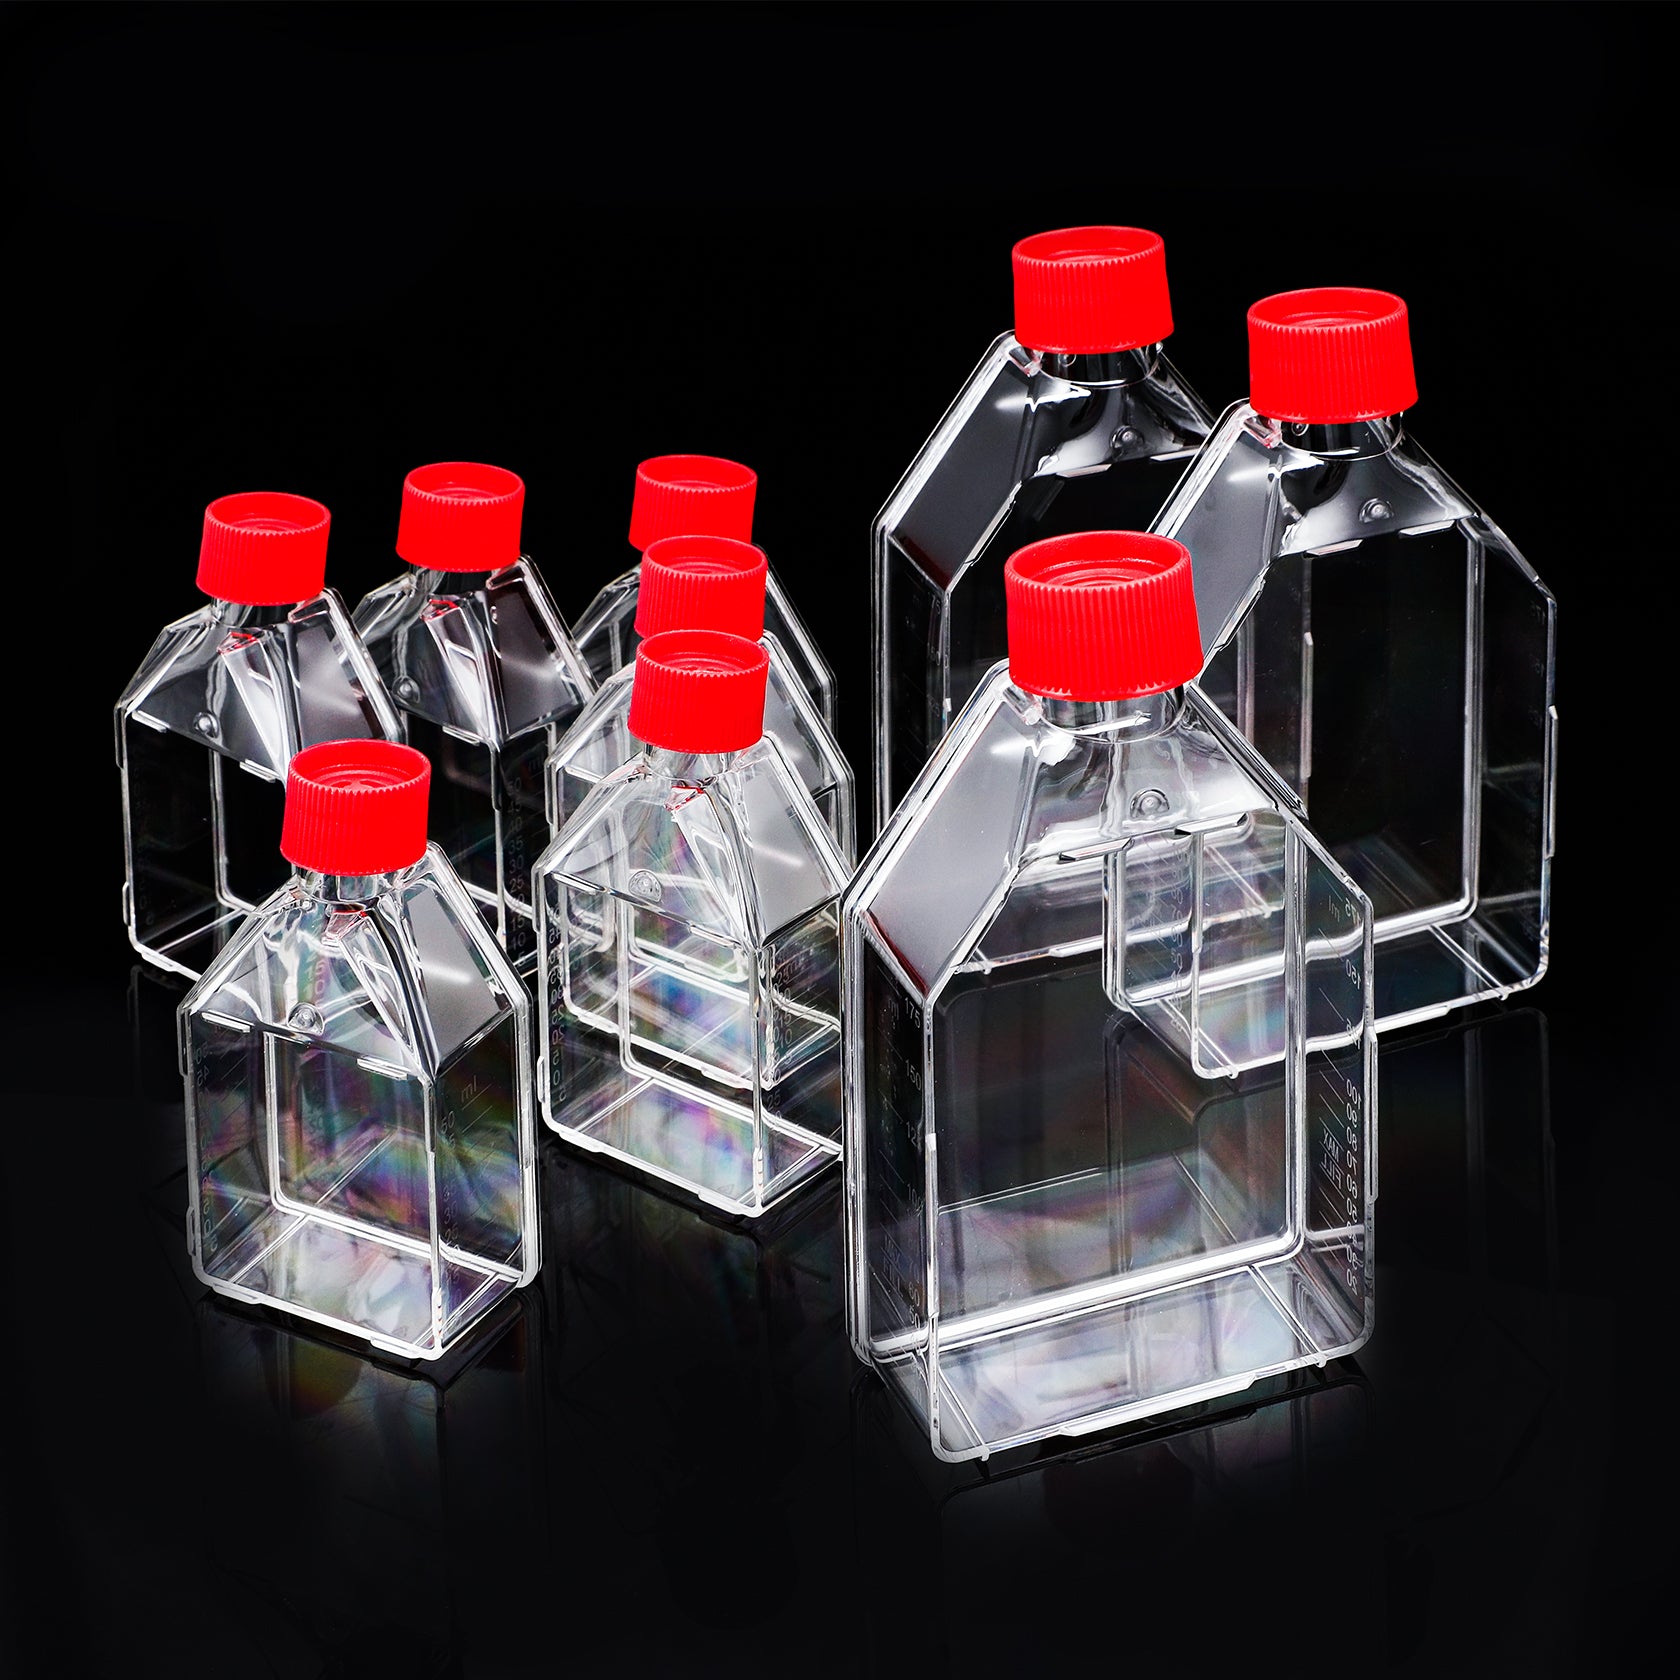 Cell Culture Flask - Four E's USA (A Four E's Scientific Company)